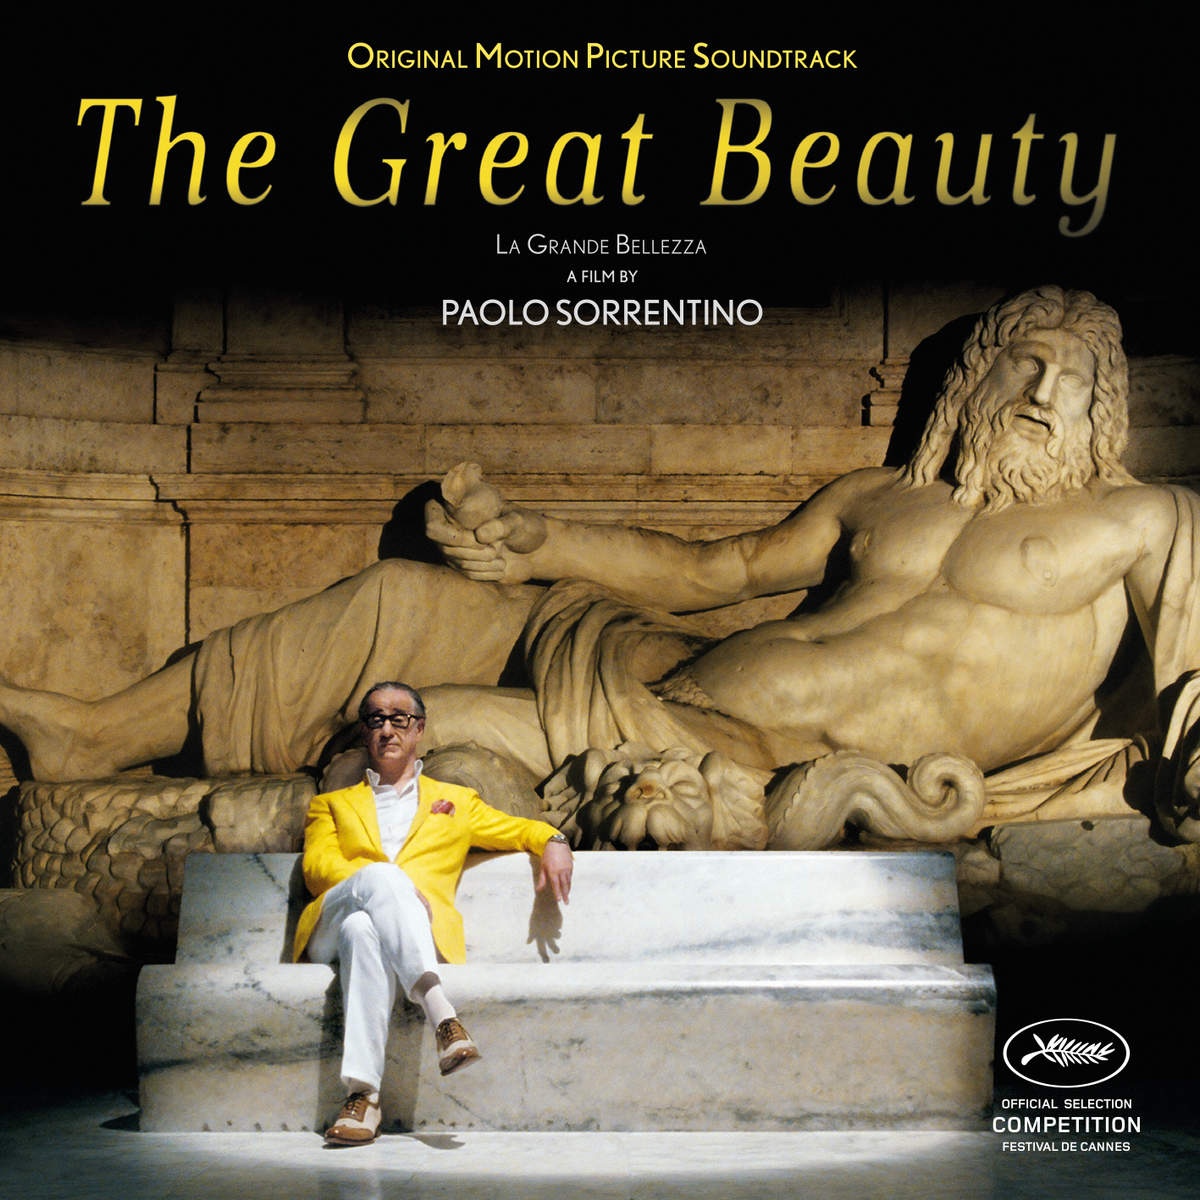 The Great Beauty (La Grande Bellezza)